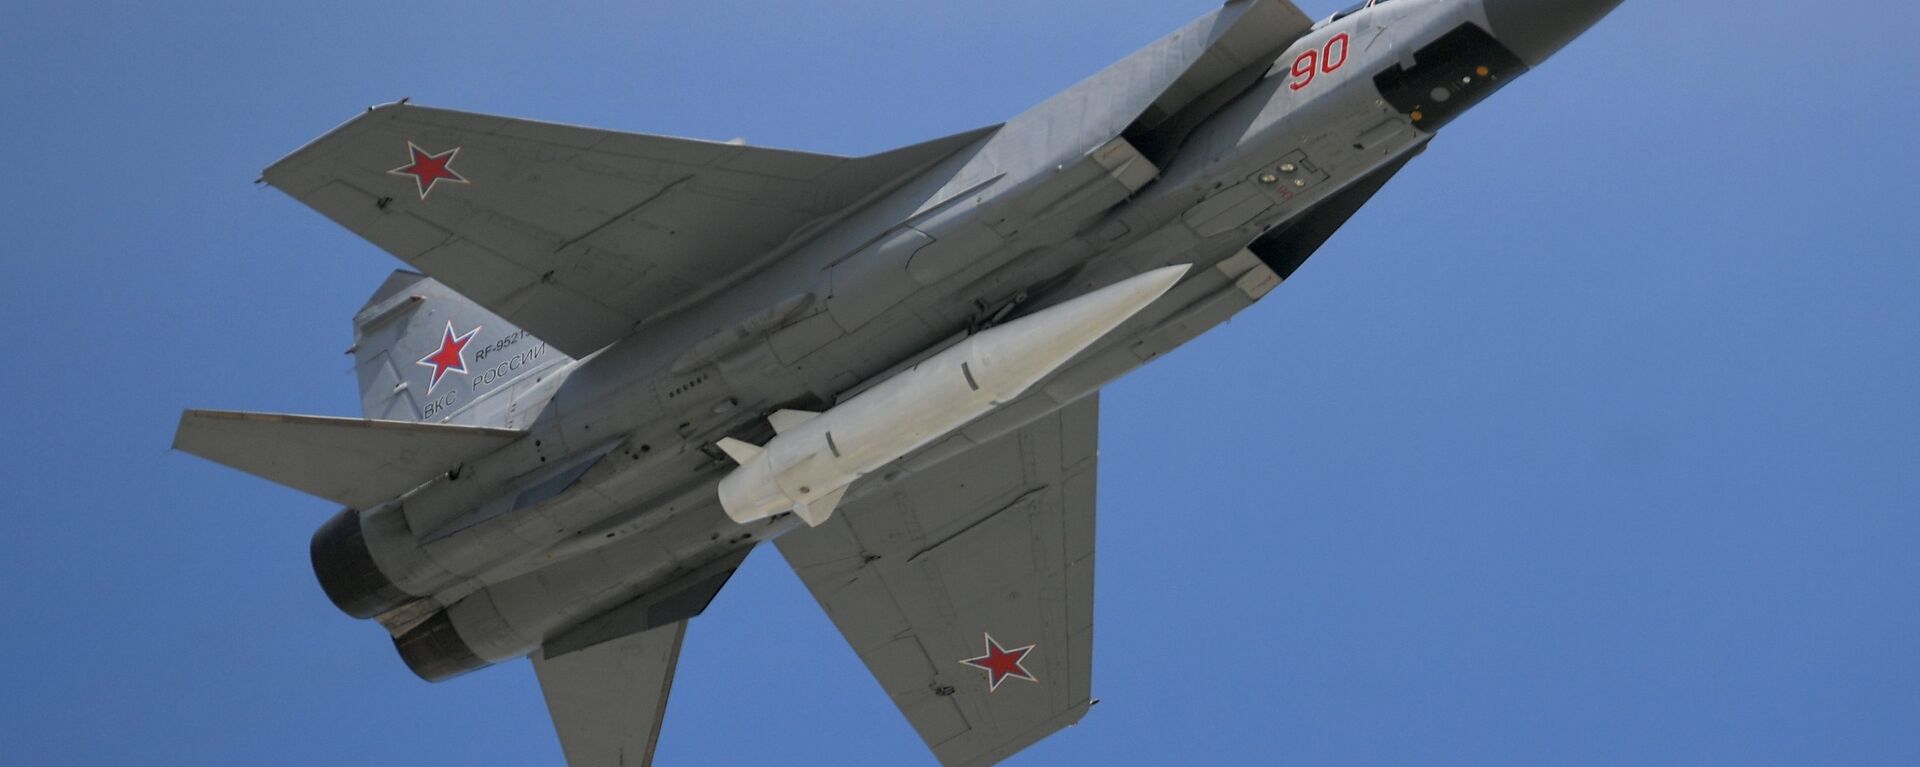 Истребитель МиГ-31, оснащенный системой Кинжал - Sputnik Беларусь, 1920, 19.07.2018